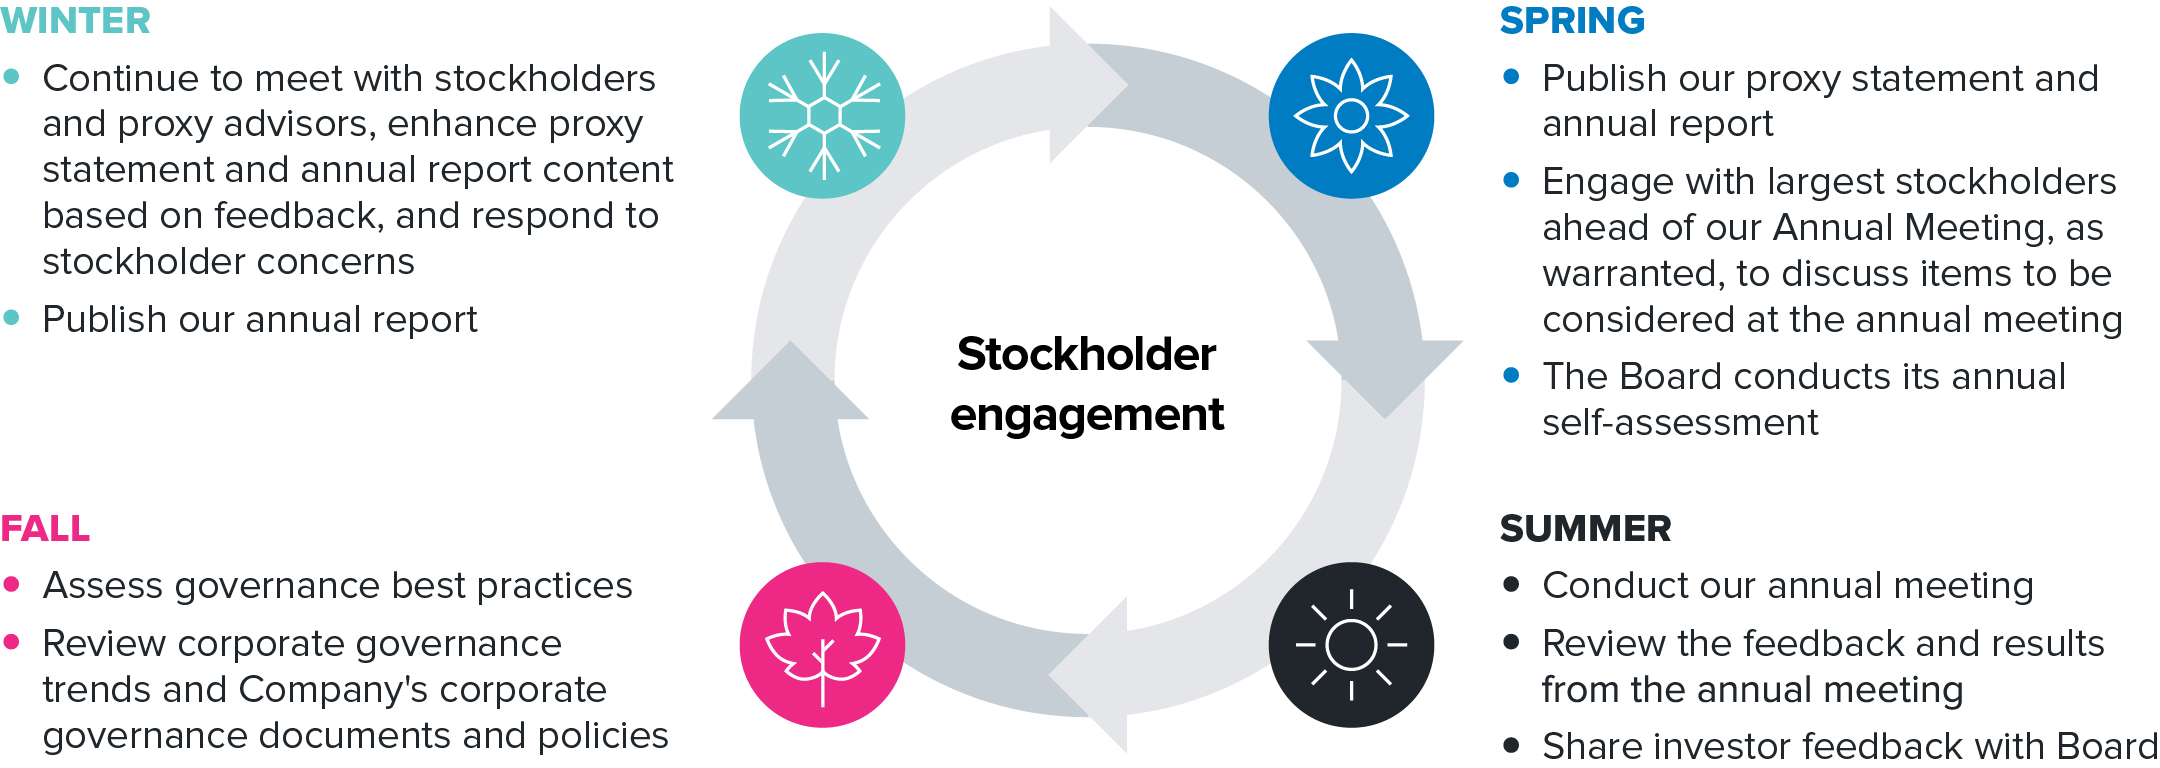 graphic_stockholderengagement_option1.jpg